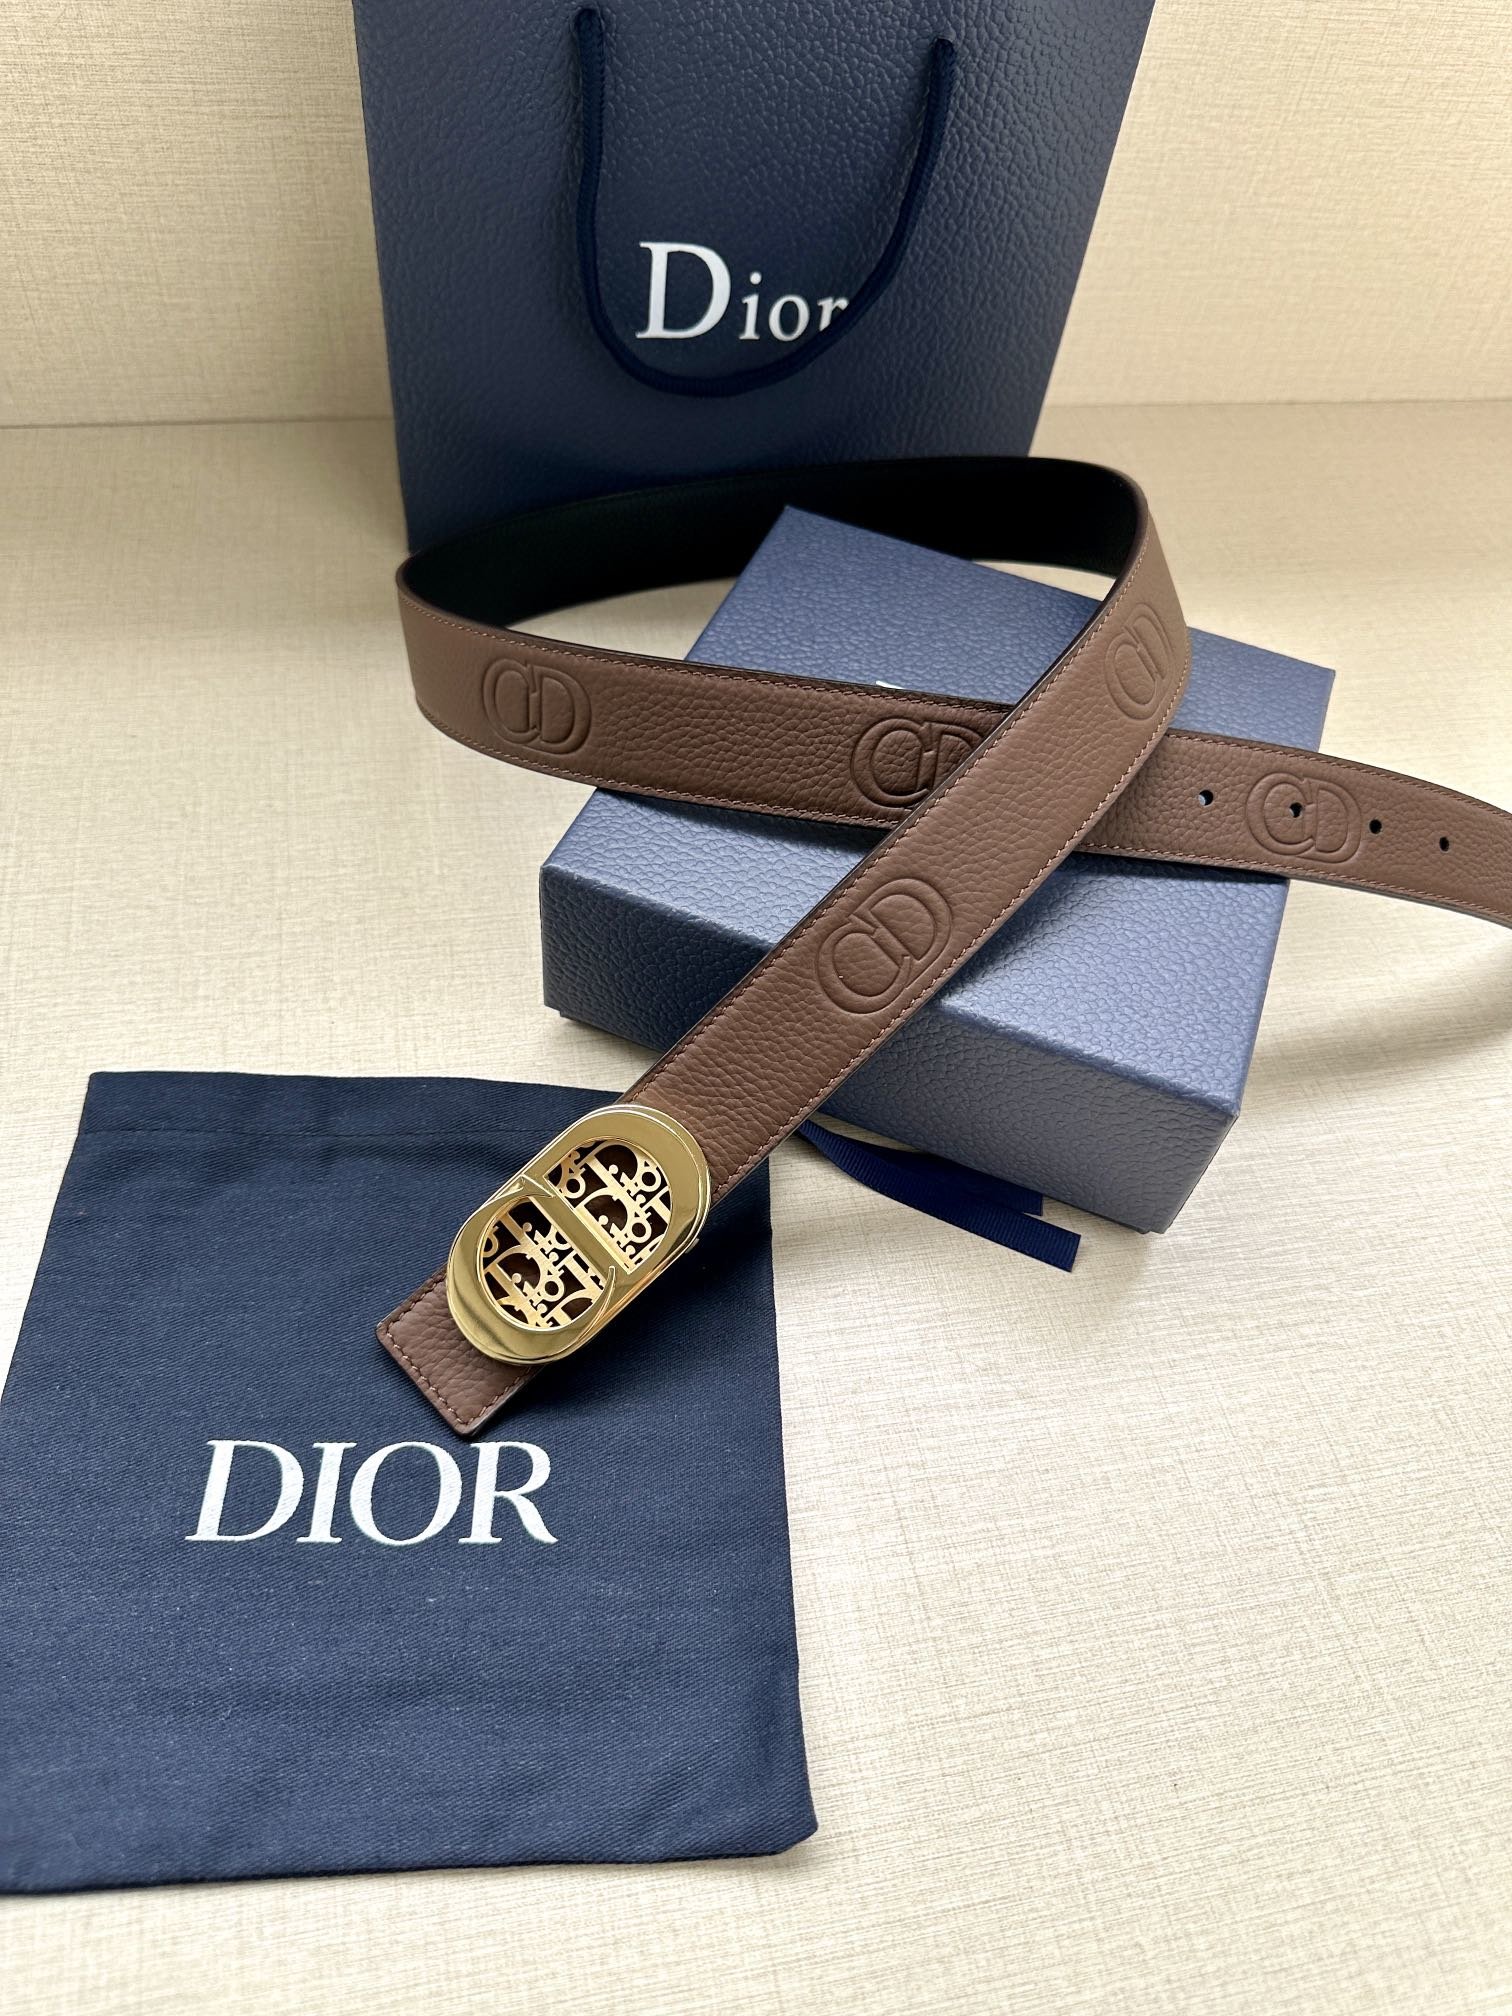 Dior这款35毫米双面腰带结合典雅气质与摩登风范一面则采用迪奥灰粒面牛皮革另一面则采用同色调压花CDI